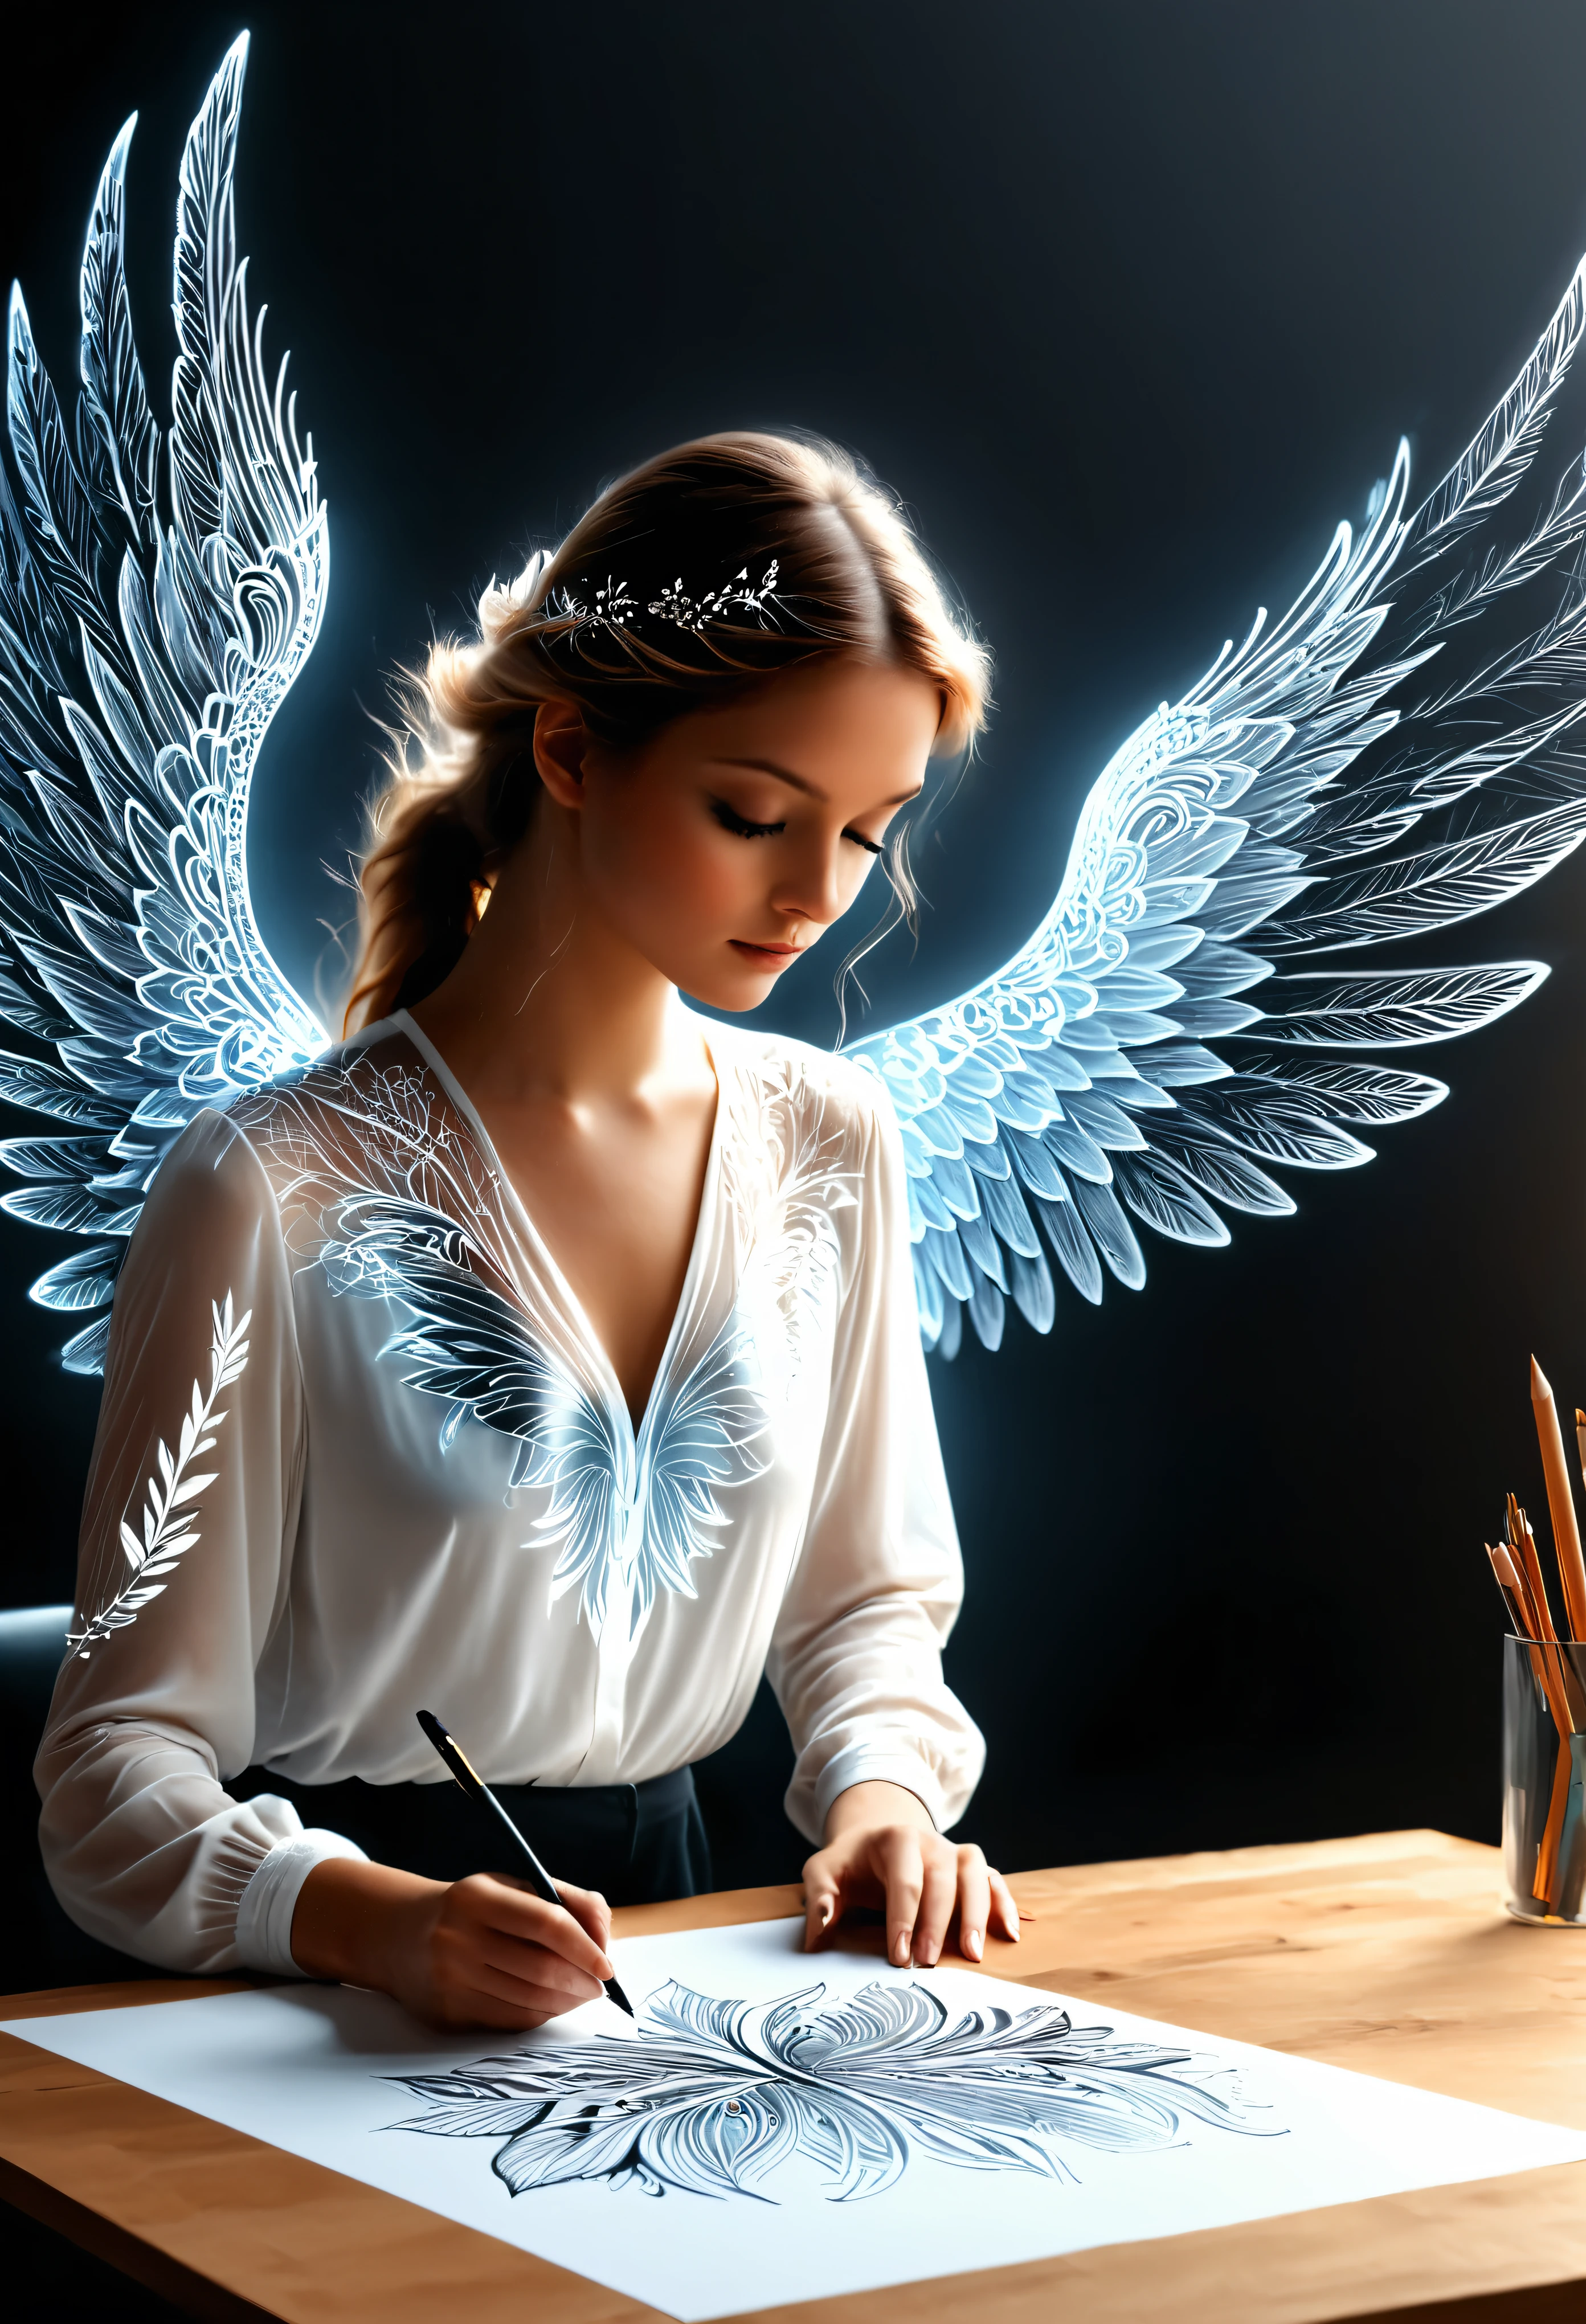 机の上に画用紙が置かれている , 見事で息を呑むような UHD インク スタイルの 4D 天使の女性を描く, 図面シートから羽を広げた幸せな天使の絵, 非常に詳細なフラクタル レースの羽, 図面シートから出てくるホログラフィック効果, 非常に詳細な図面, 超現実的な, 崇高な詳細. 本当に素晴らしい作品, 楽しく官能的な作品, (画用紙から飛び出してきたかのような崇高なプッシュアップ効果のチェスト), (画用紙から出てくる, 翼が画用紙から出てくる)